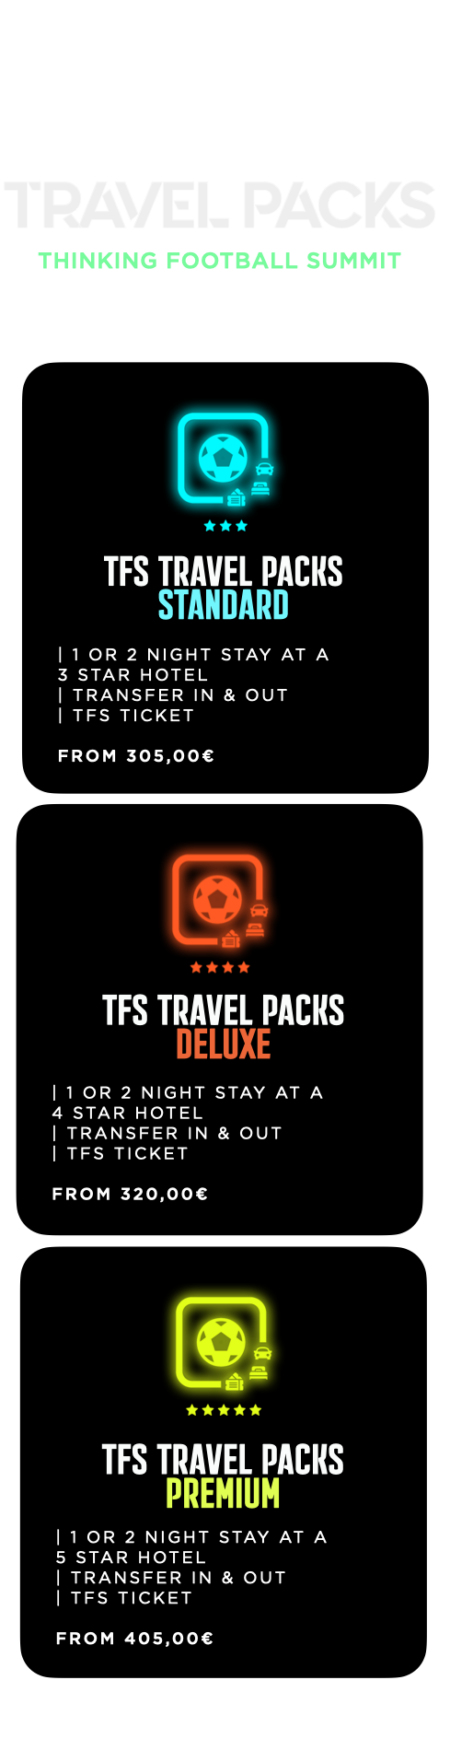 TFS Travel Packs